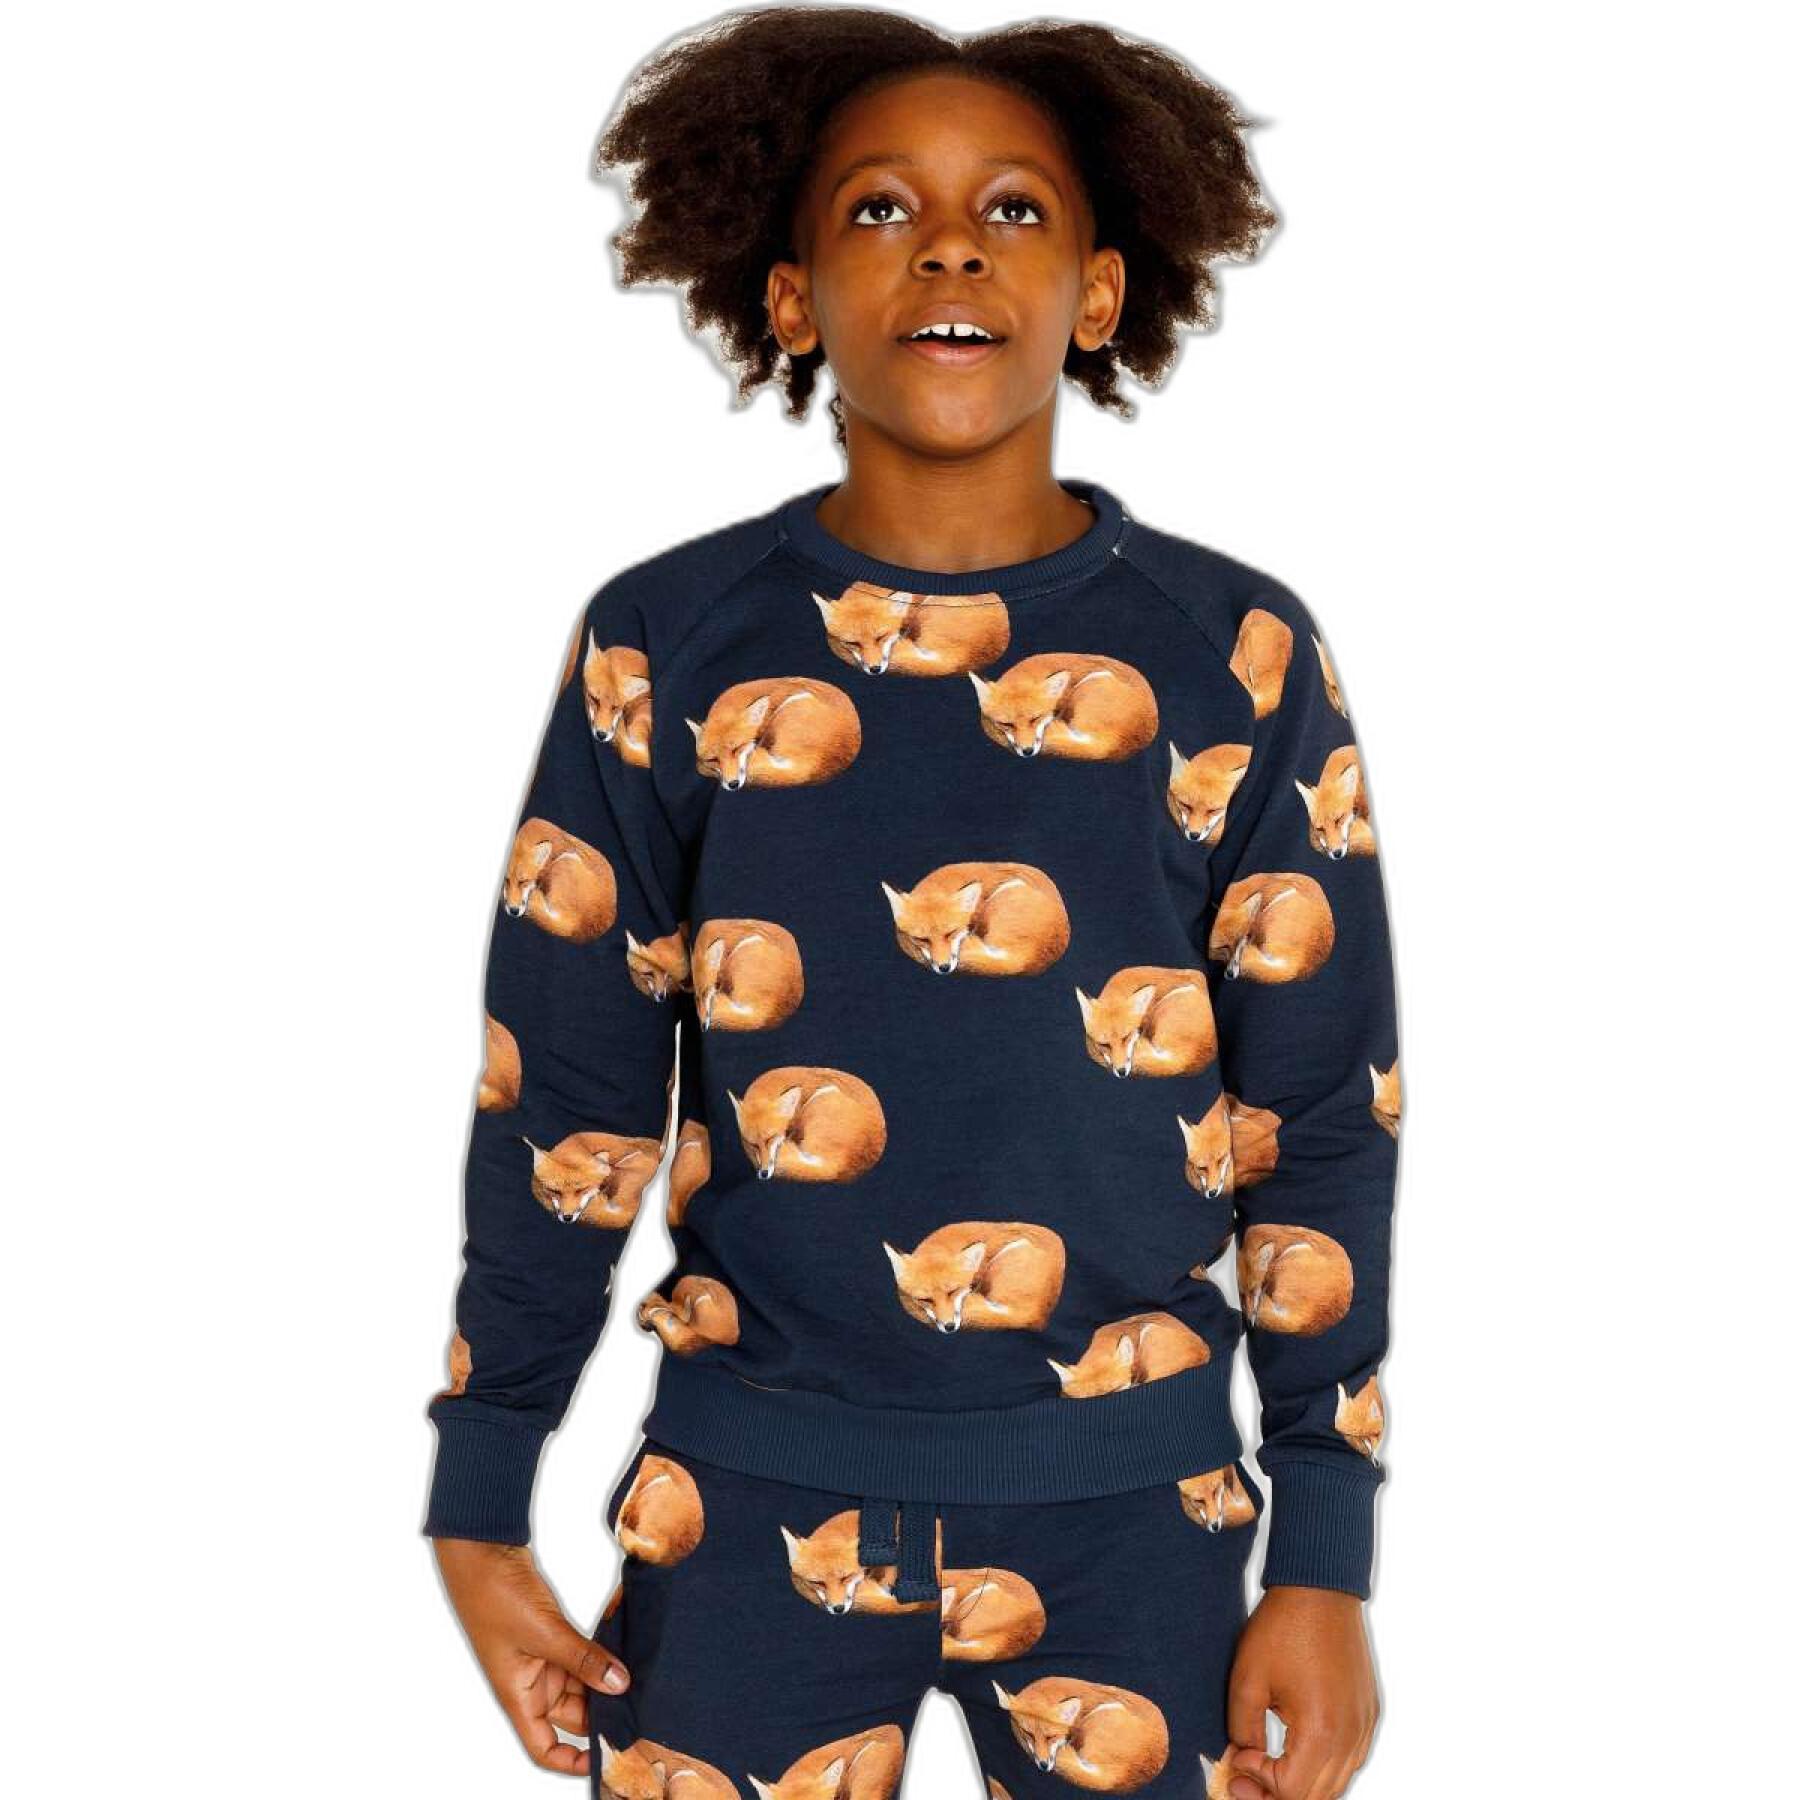 Child's sweater Snurk Fox Gots